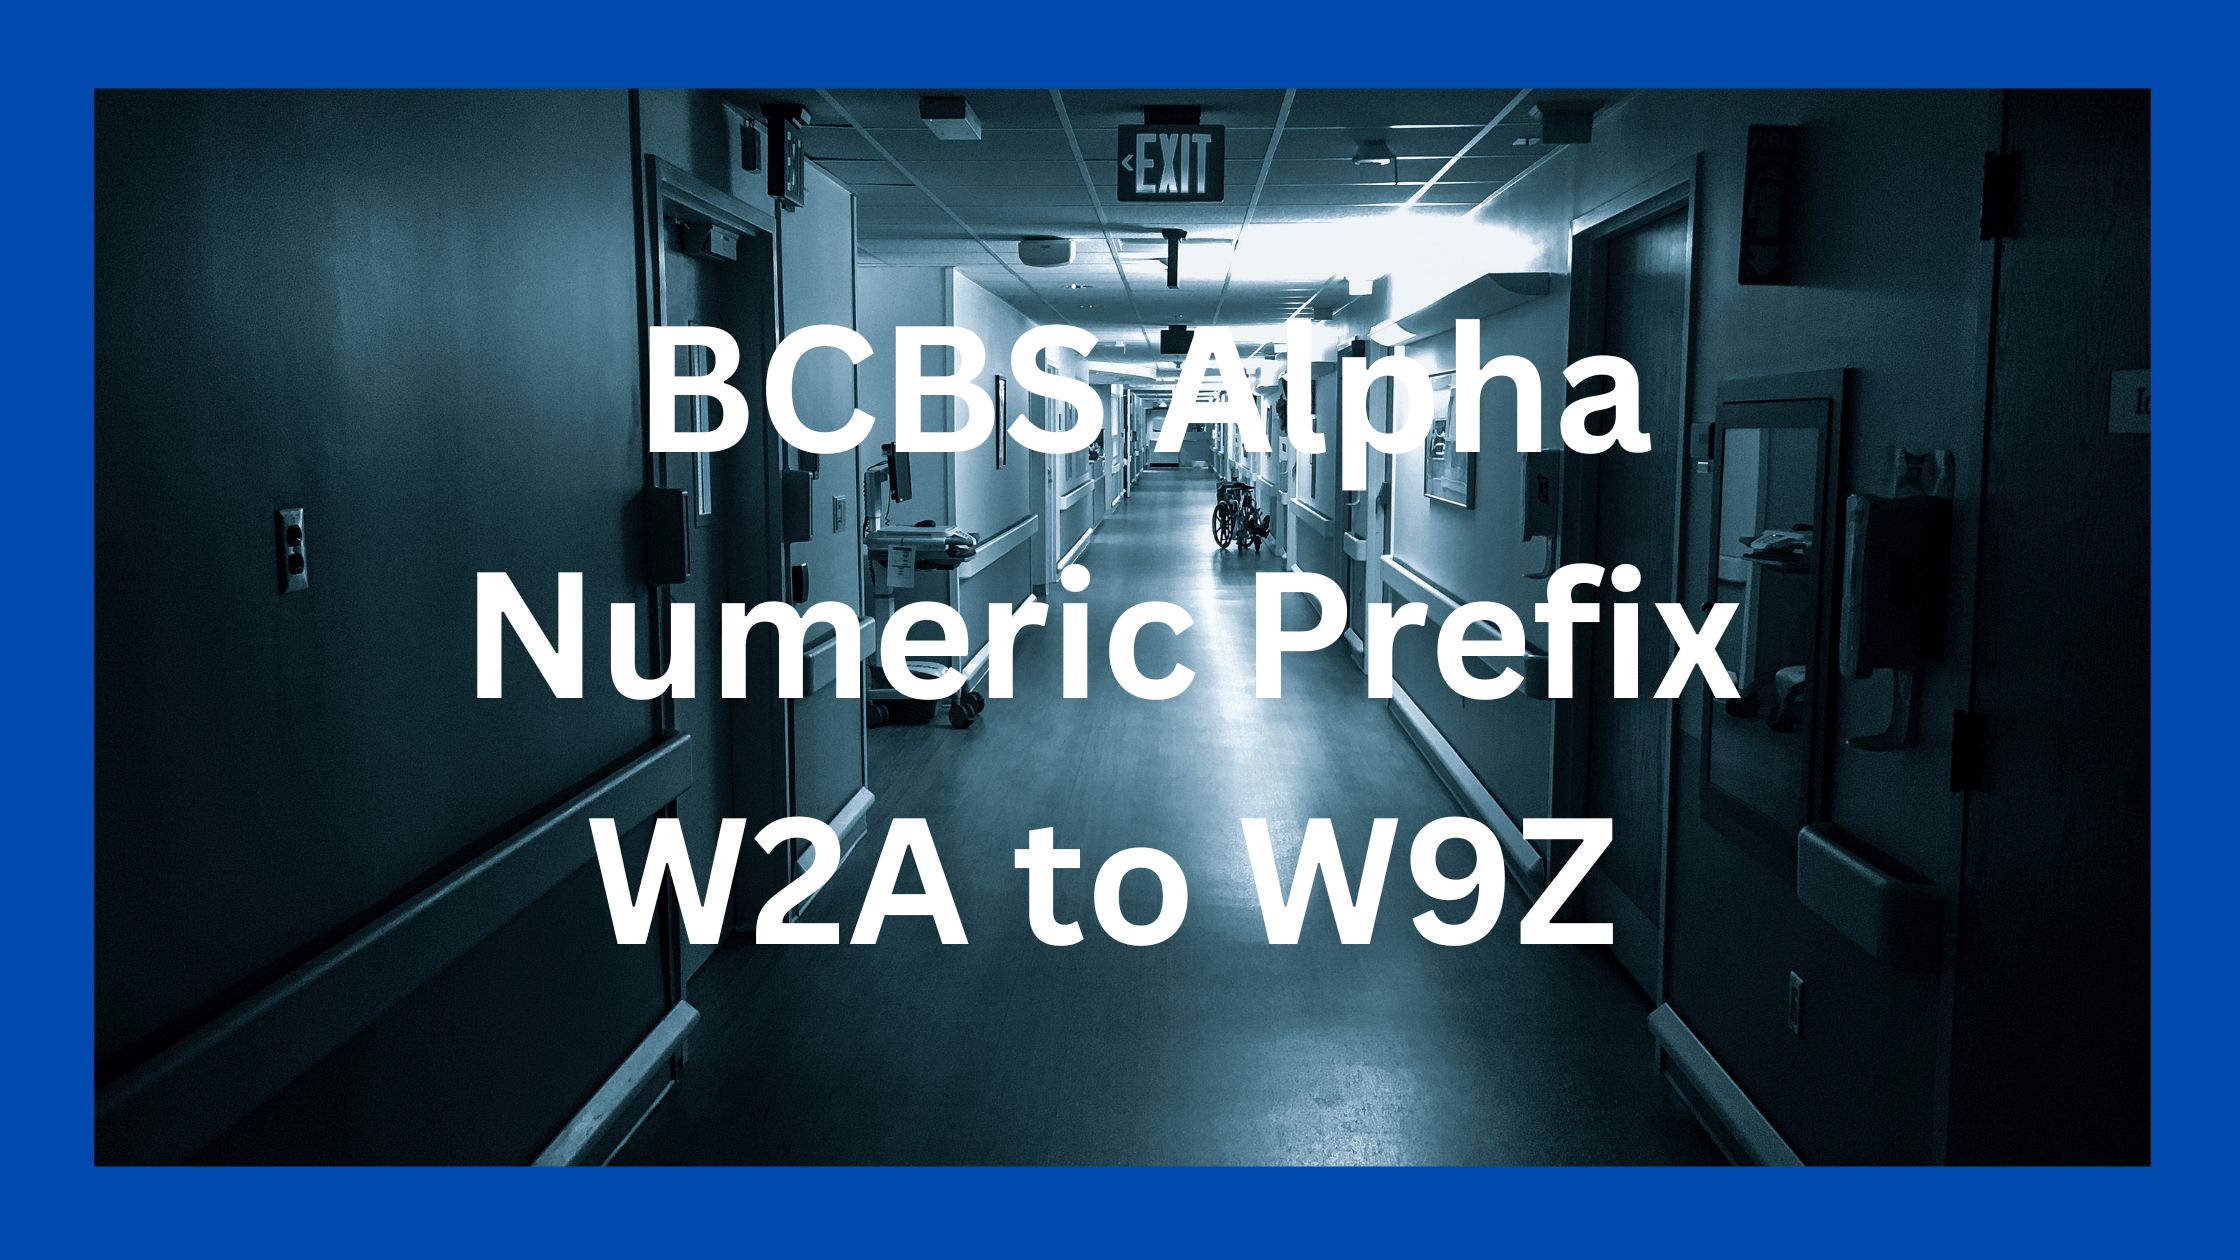 bcbs alpha numeric prefix w2a-w9z